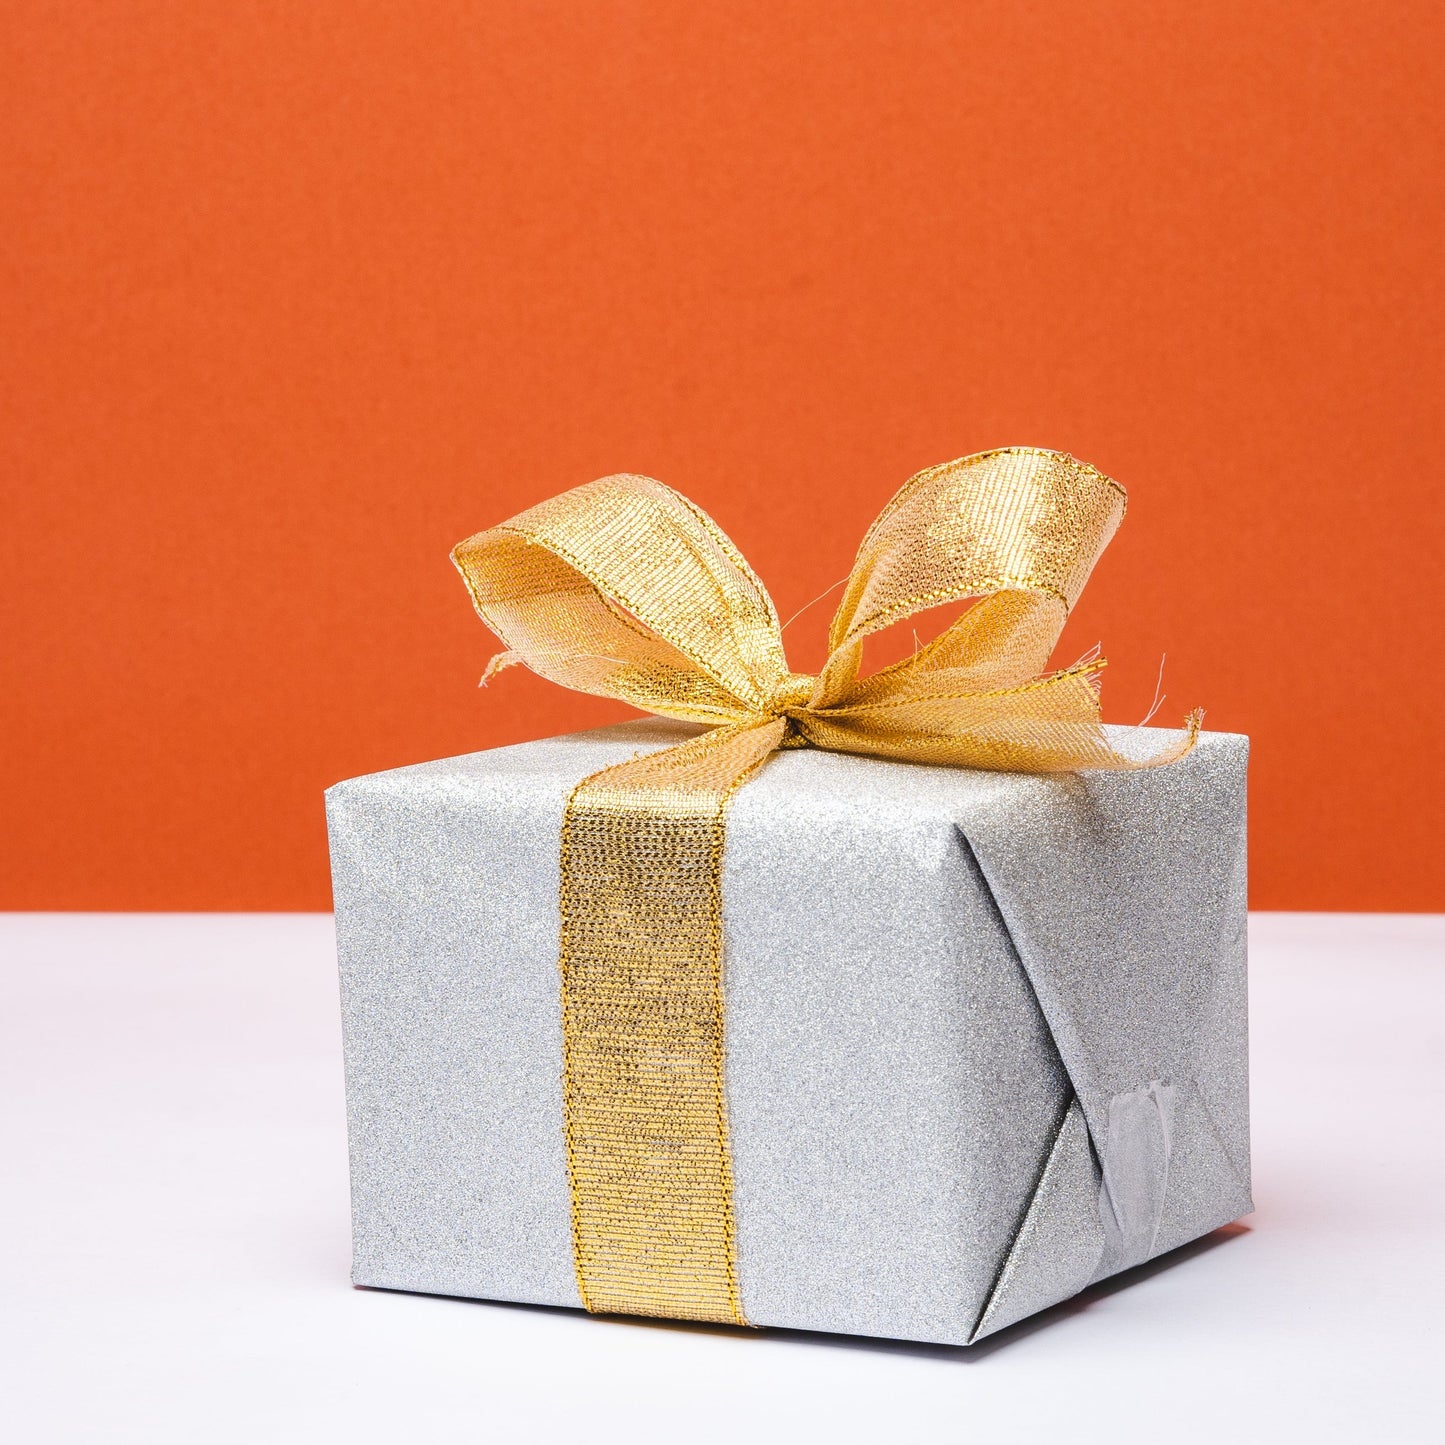 Mini Gift Box